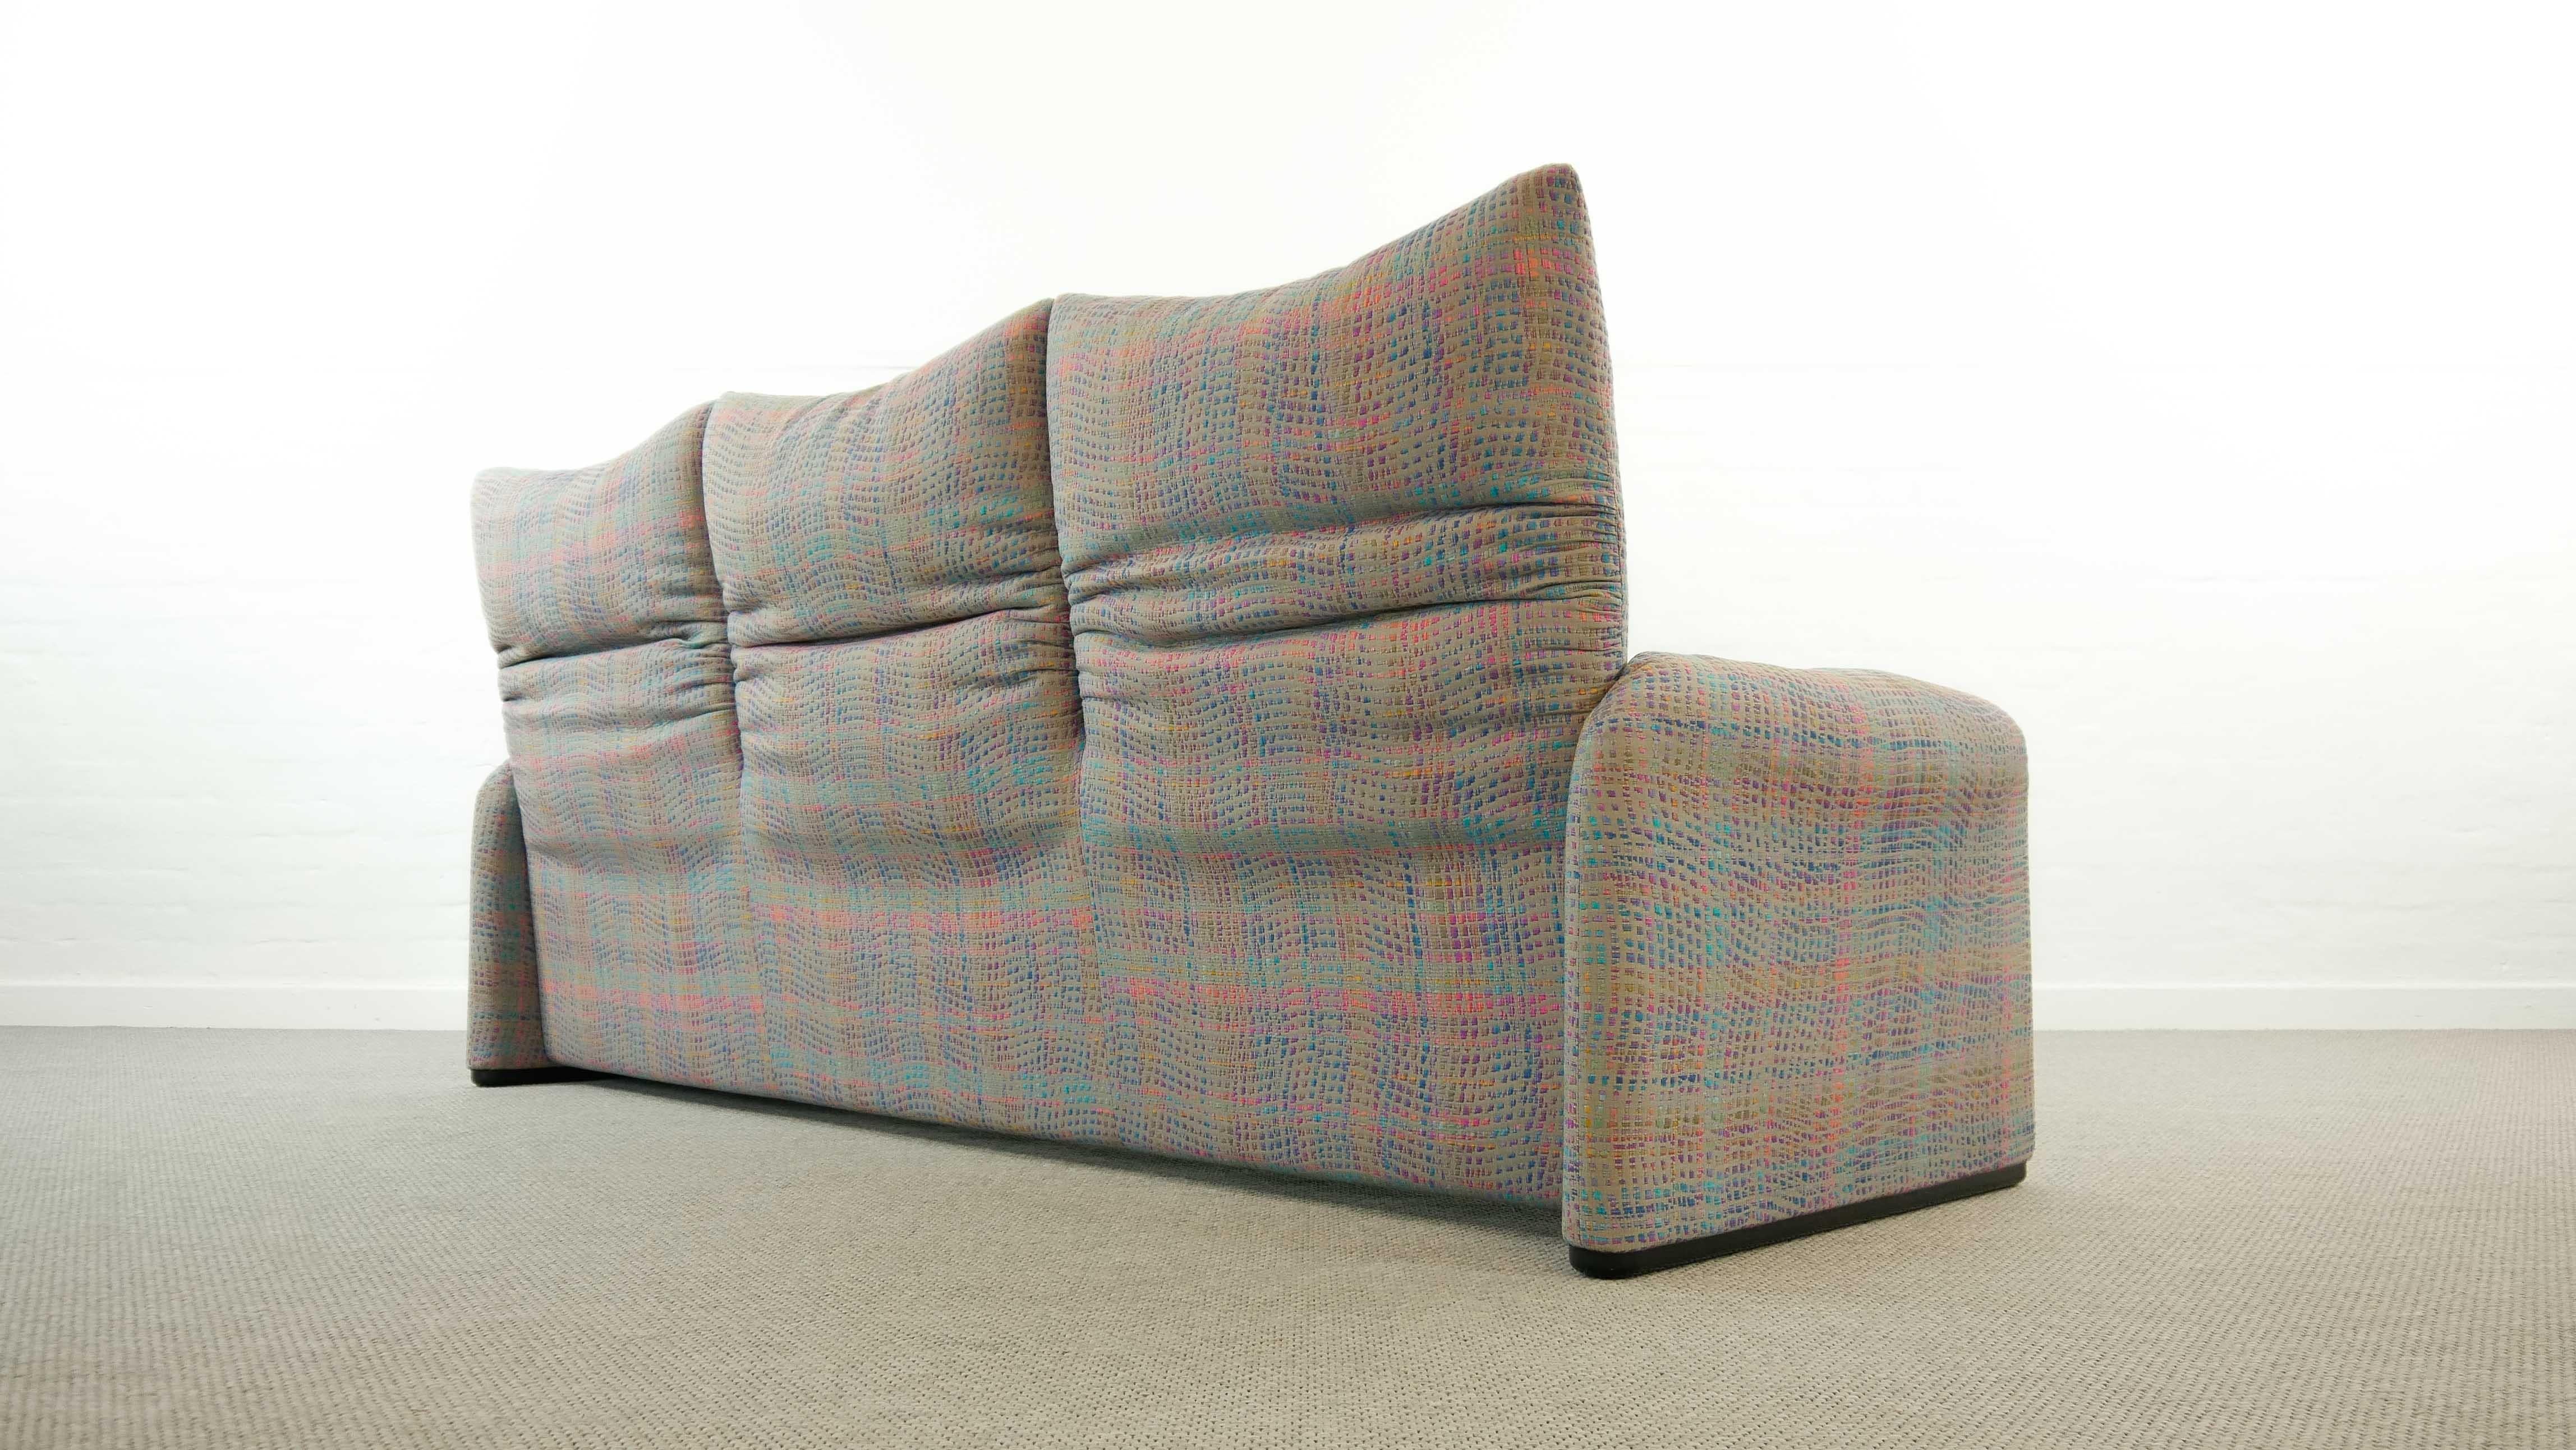 Maralunga 3-Seat Sofa by Vico Magistretti for Cassina in Grey-Multicolore Fabric 2